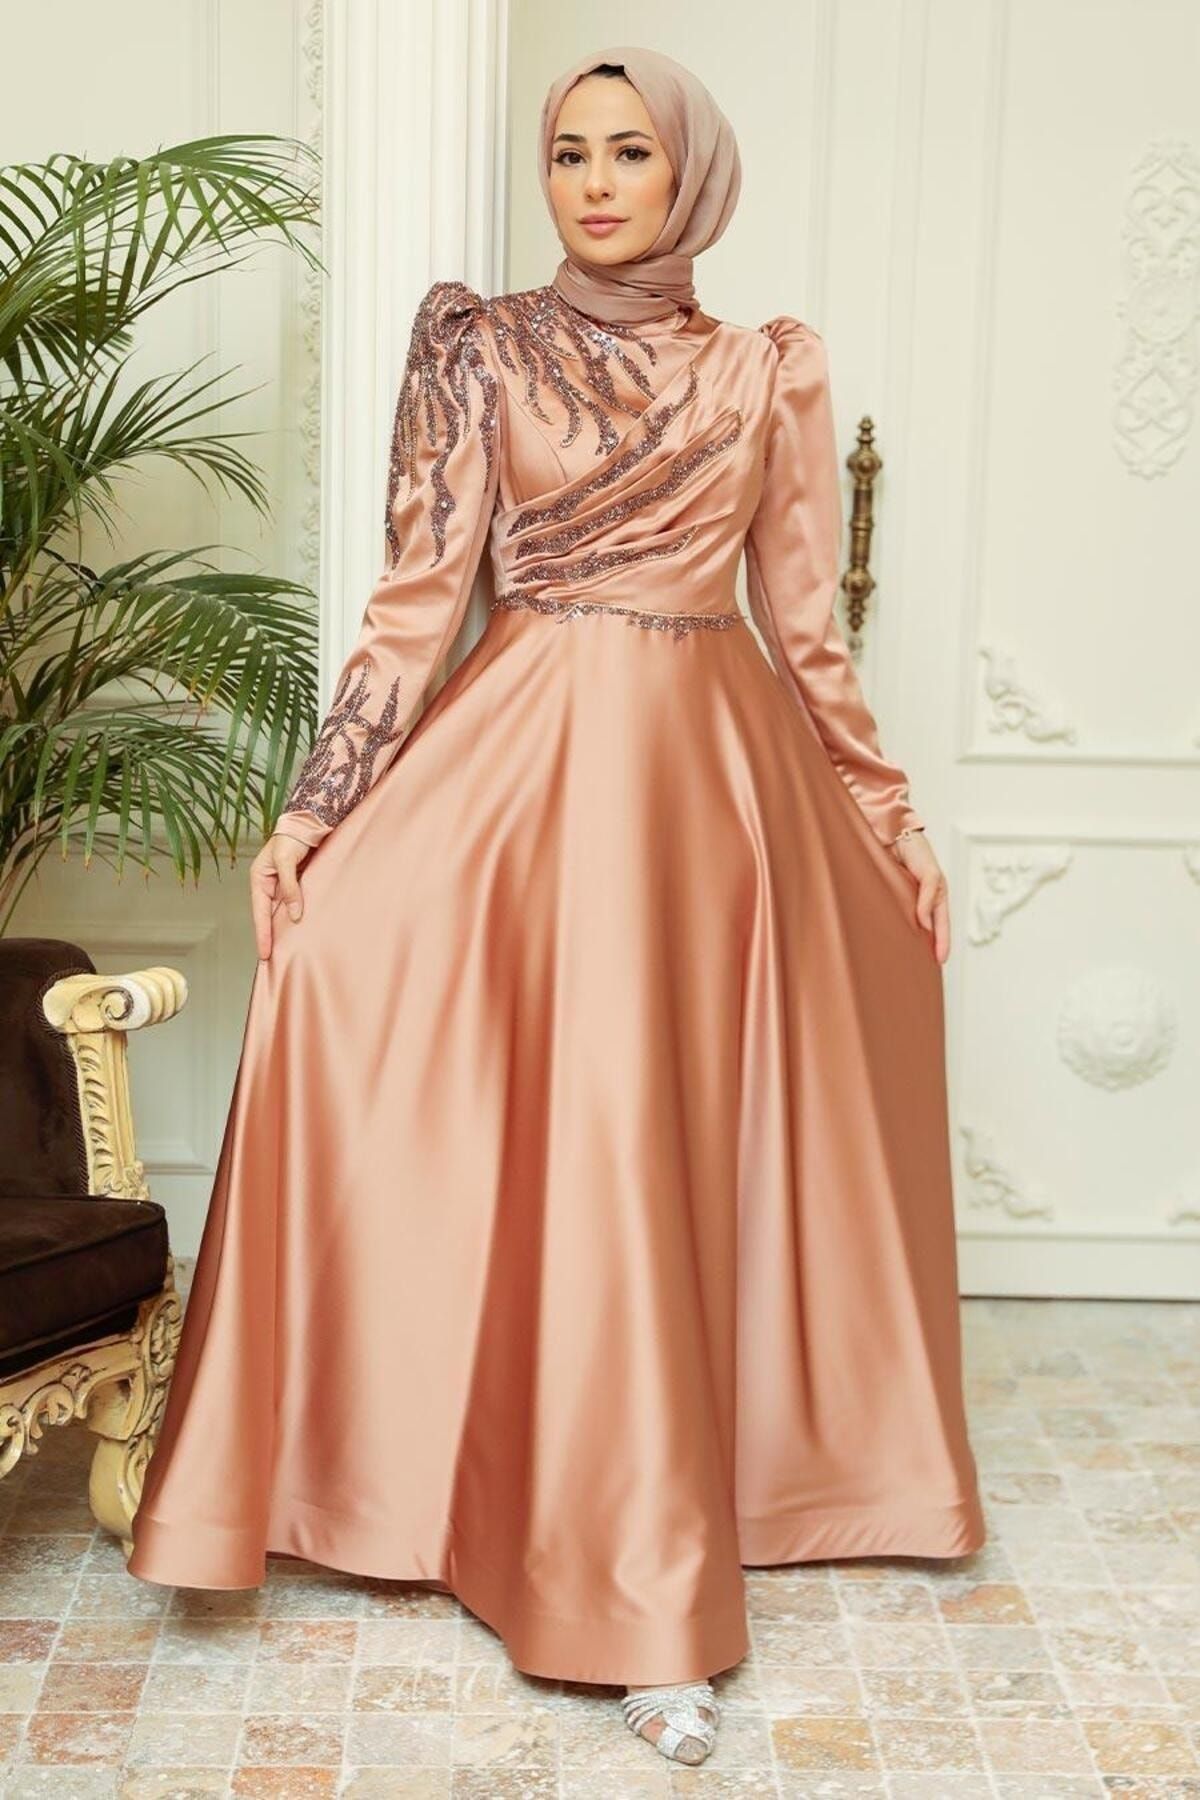 Neva Style Tesettürlü Abiye Elbise - Boncuk Işlemeli Bakır Saten Tesettür Abiye Elbise 2239bkr